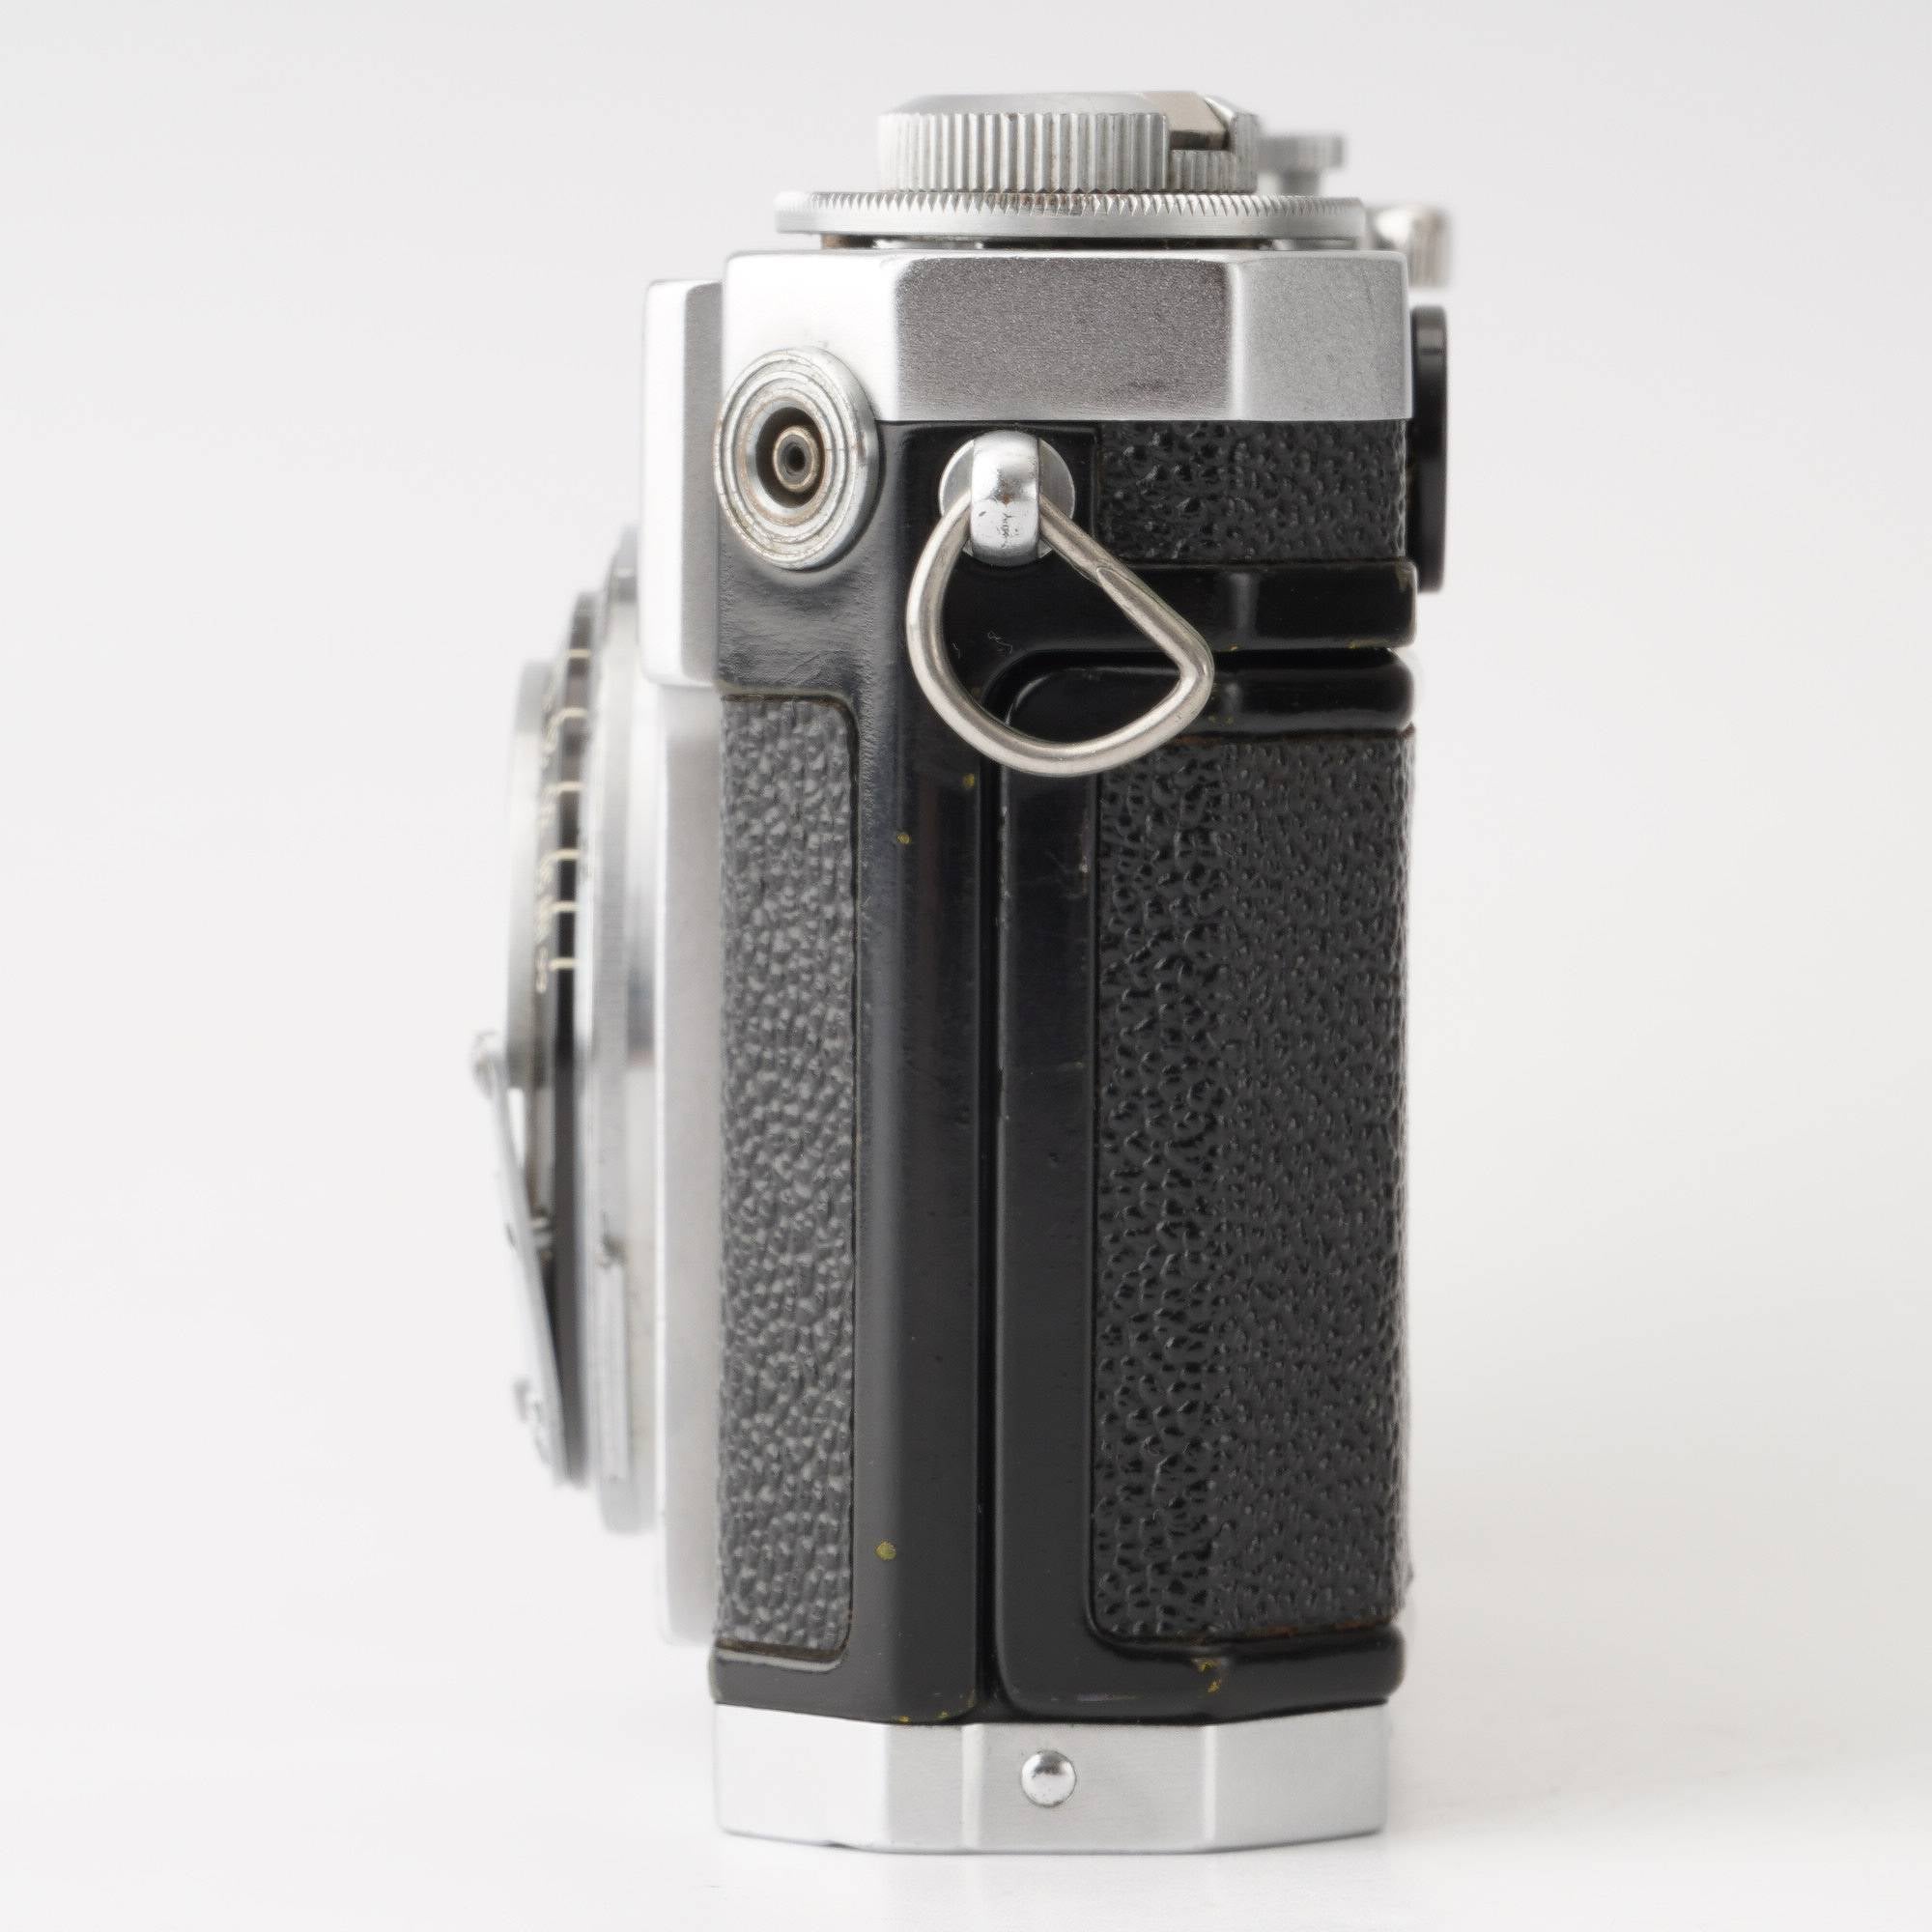 ニコン Nikon S2 ブラックダイヤル/ NIKKOR-S・C 5cm 50mm F1.4